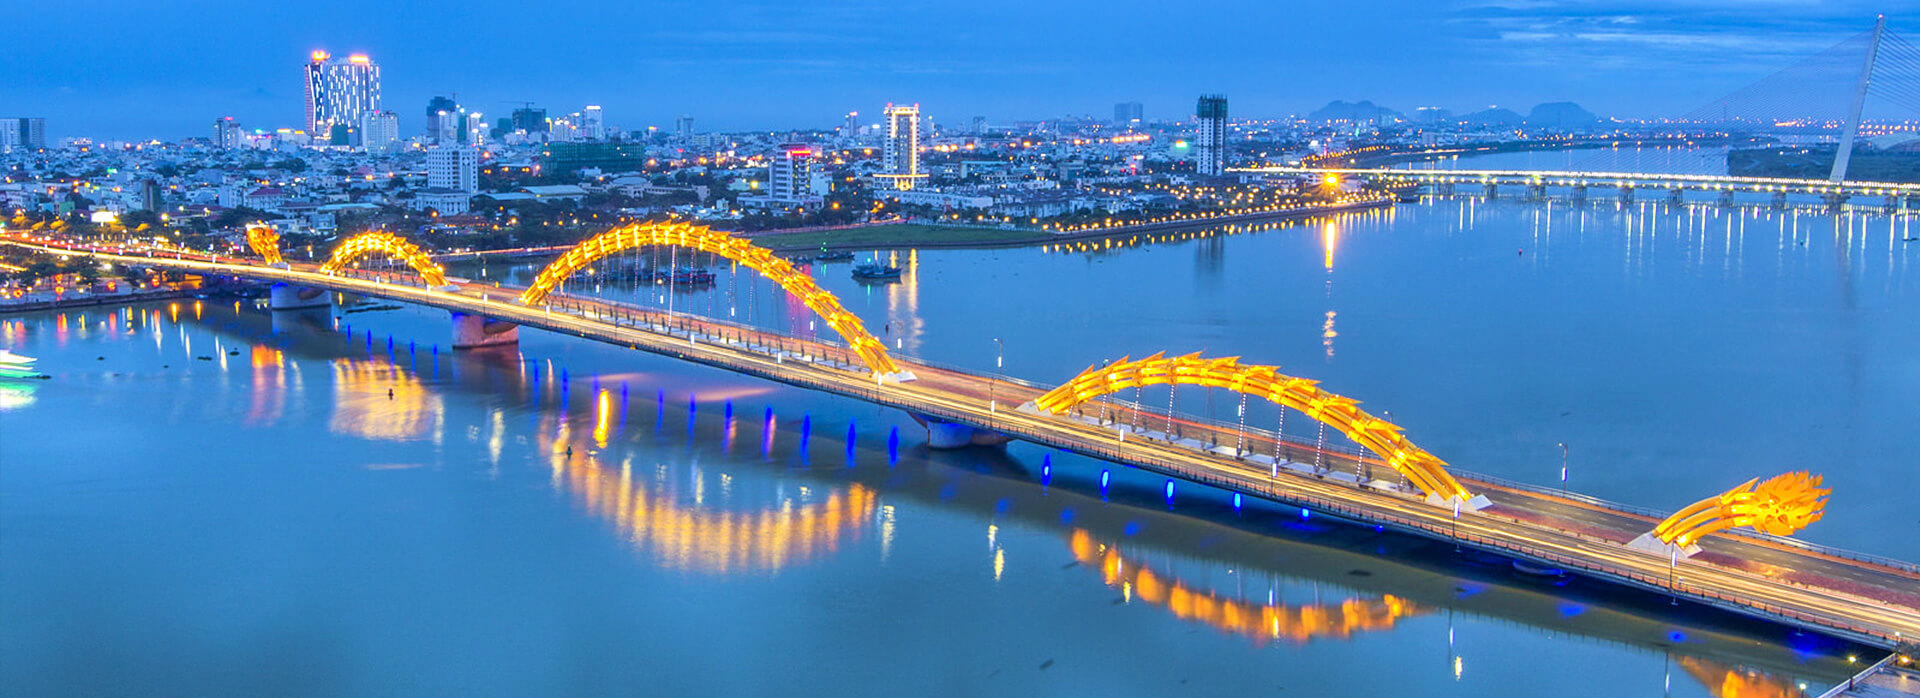 Cầu Rồng - Địa điểm sống ảo ở Đà Nẵng